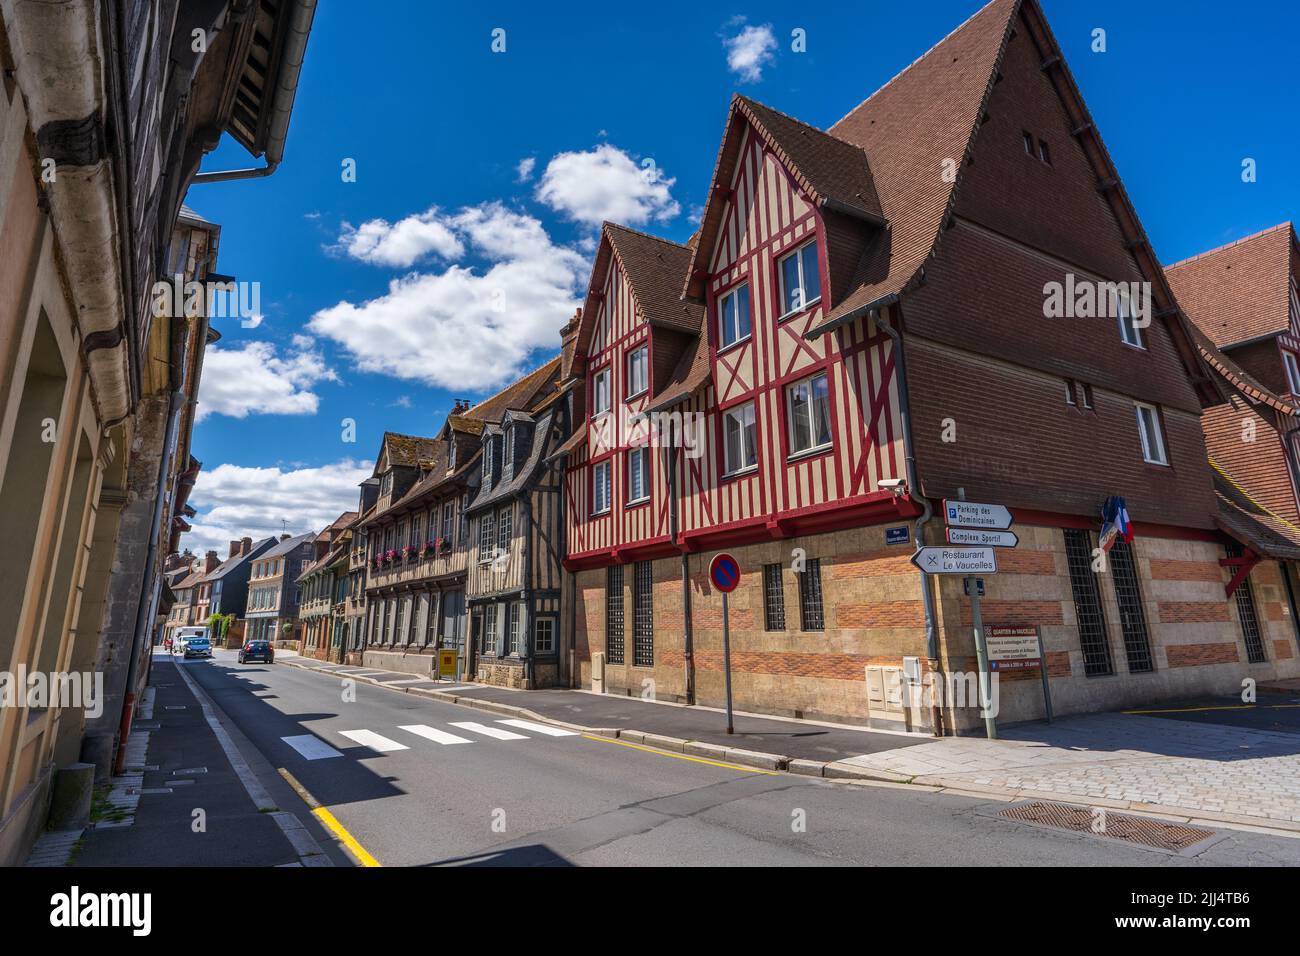 Villaggio bretone con le tipiche abitazioni a traliccio (Francia) Foto de stock